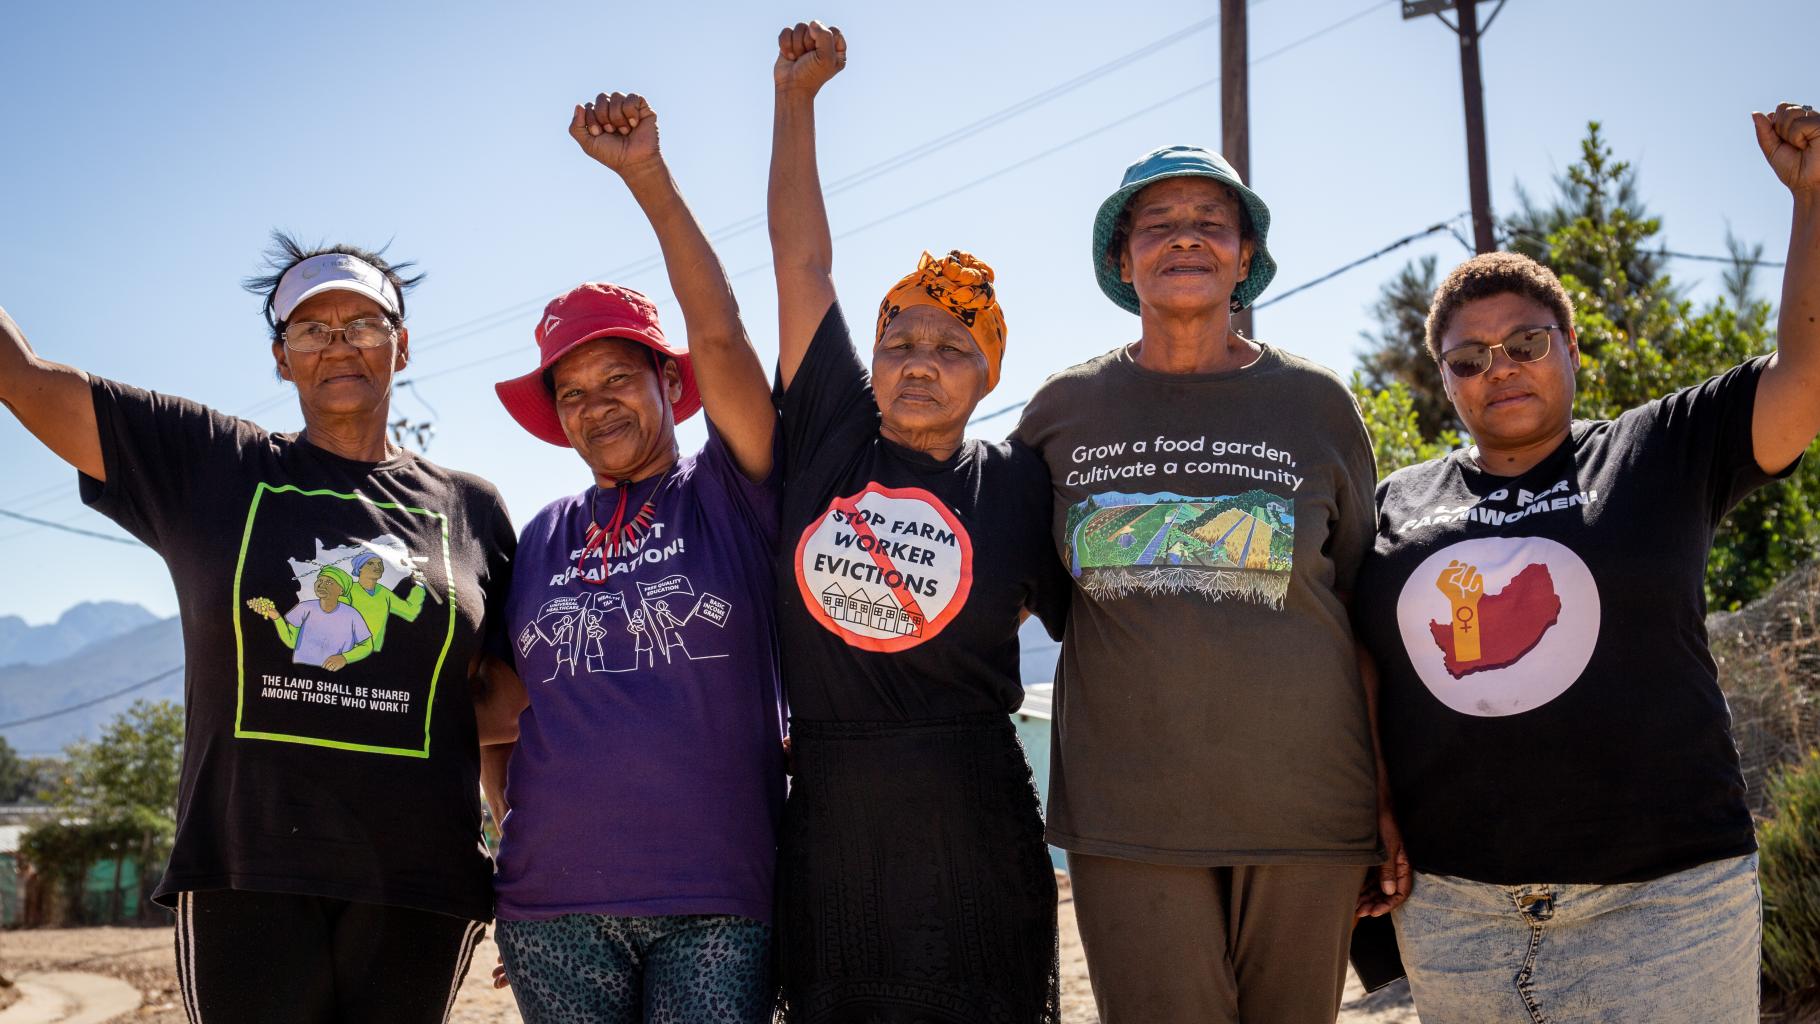 Gruppenbild von Women on Farms Project Aktivistinnen. Sie strecken ihre Fäuste in die Luft. In der Mitte ist Bettie Fortuin zu sehen, sie trägt ein gelbes, geknotetes Kopftuch und ein schwarzes T-Shirt mit der Aufschrift "Stop Farm Worker Evictions"